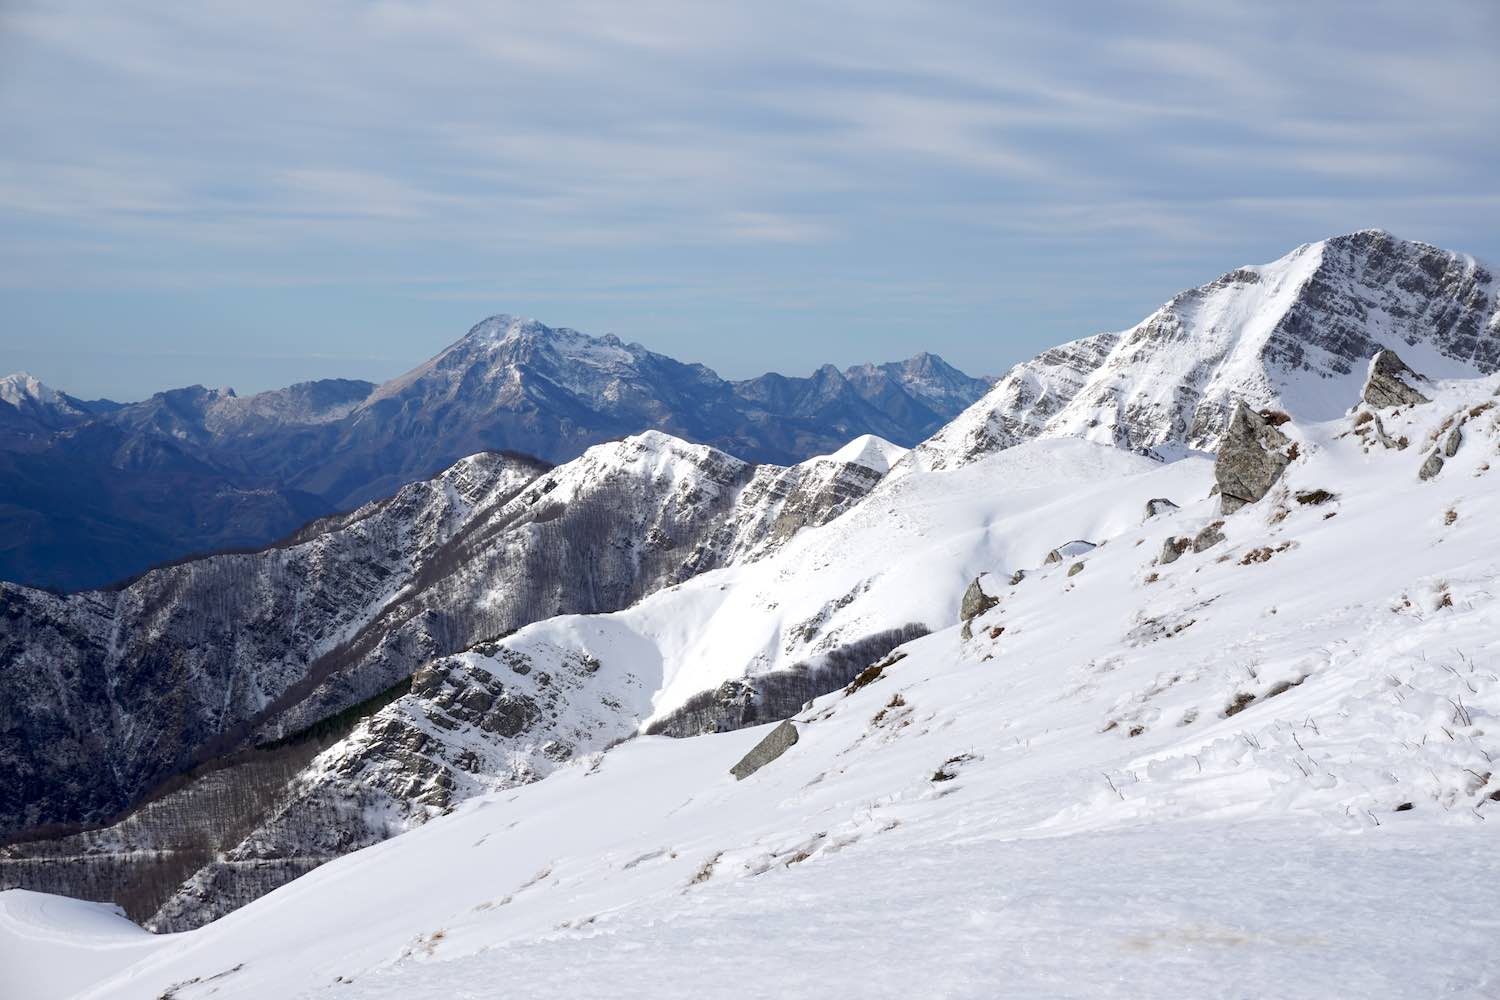 Vuoi venire a sciare in Toscana? Ecco le 7 località sciistiche toscane dove trovare impianti di risalita, strutture, snowpark e campi scuola